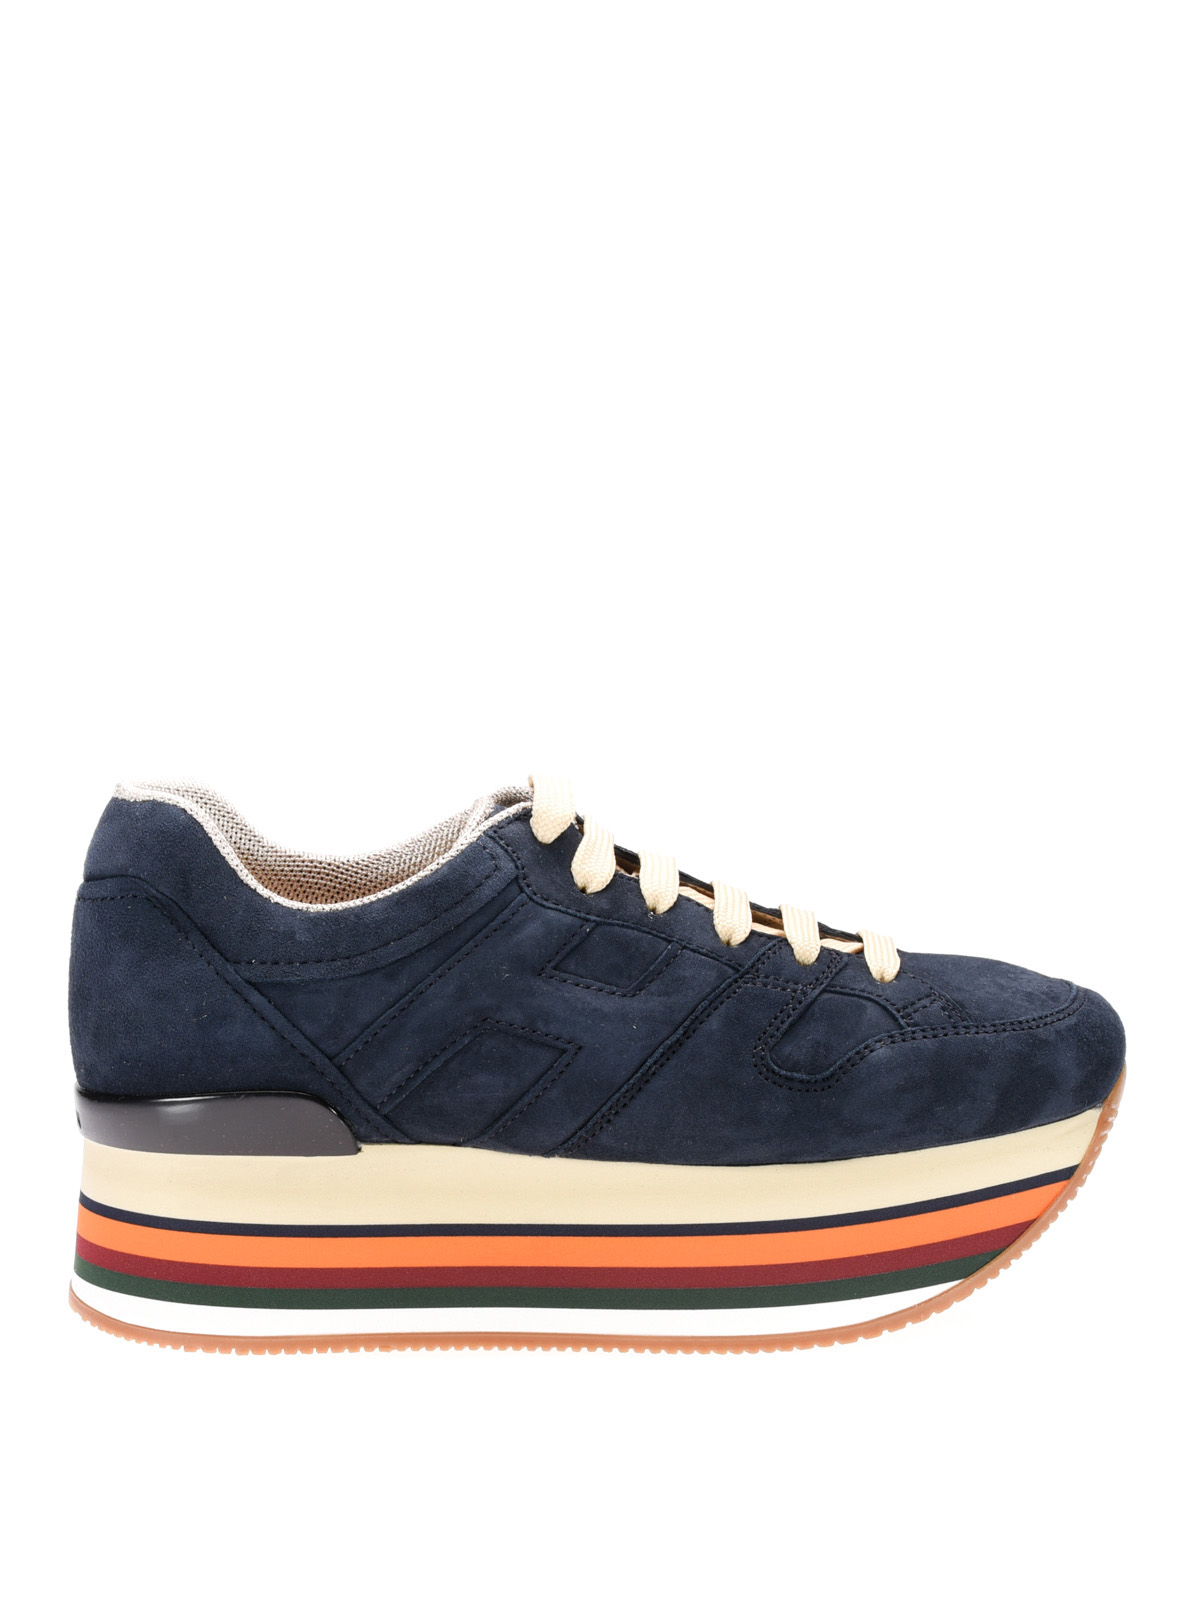 Hogan - Sneaker Maxi H222 blu in camoscio - sneakers - HXW2830T543CR0U810